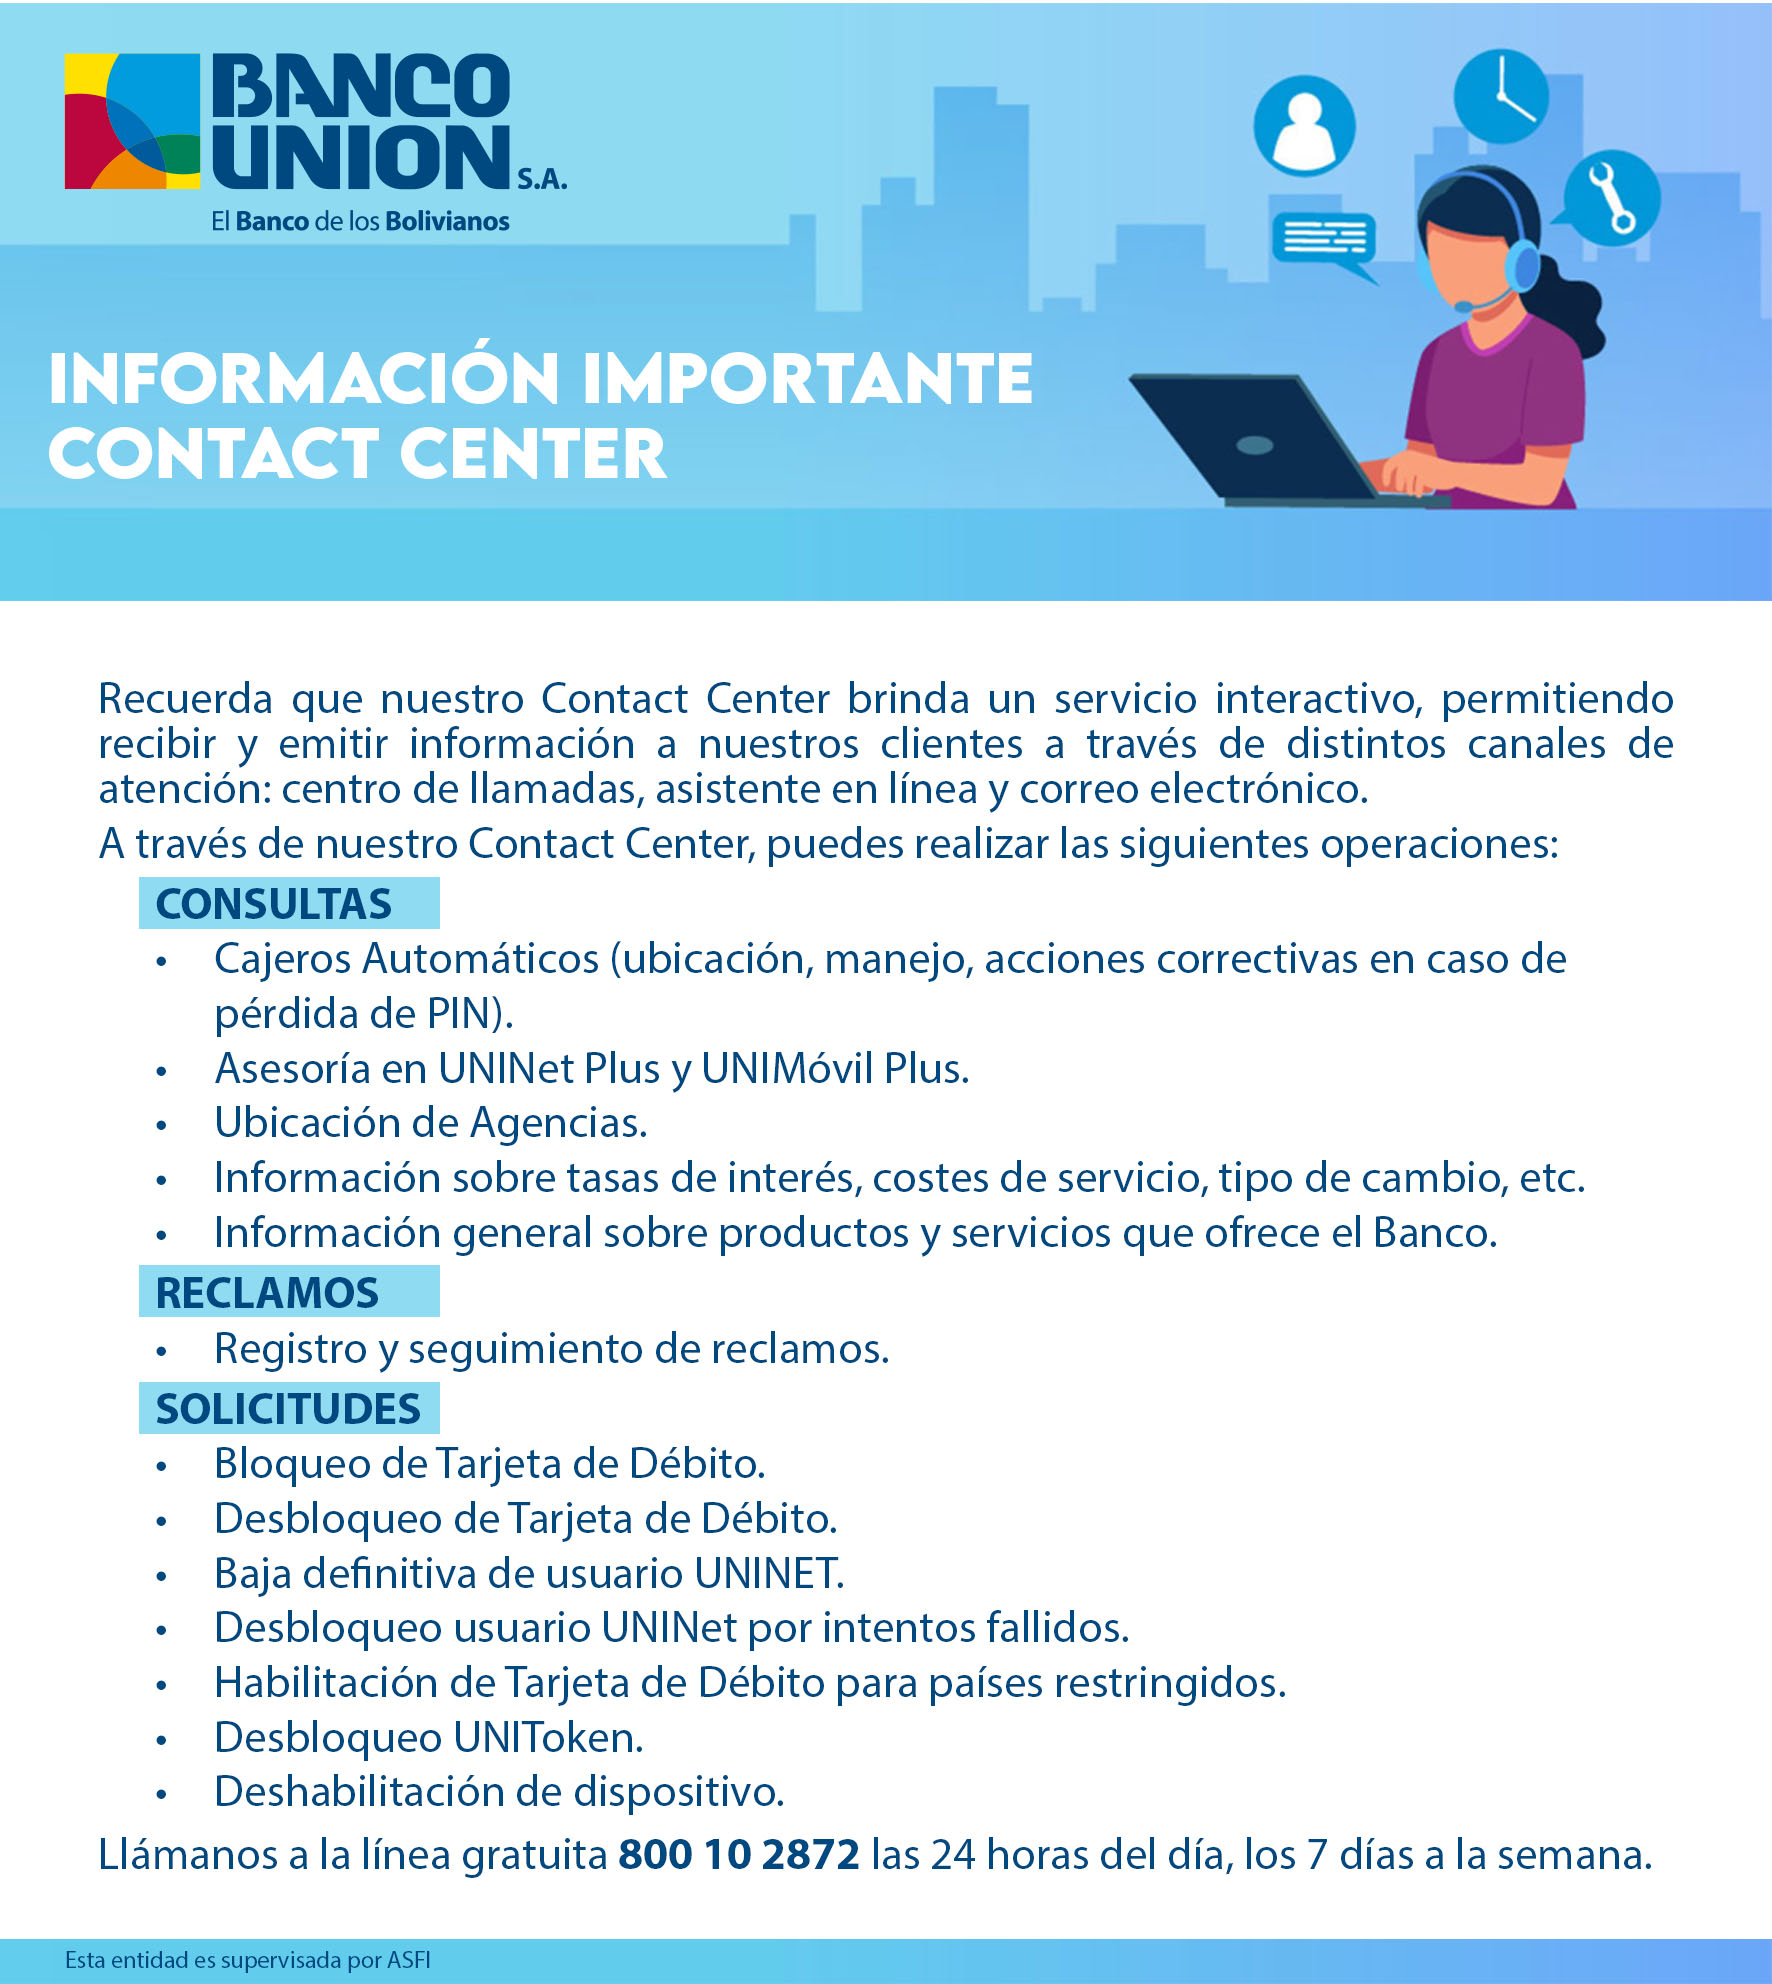 Uninet Plus,Banco Union S.A.